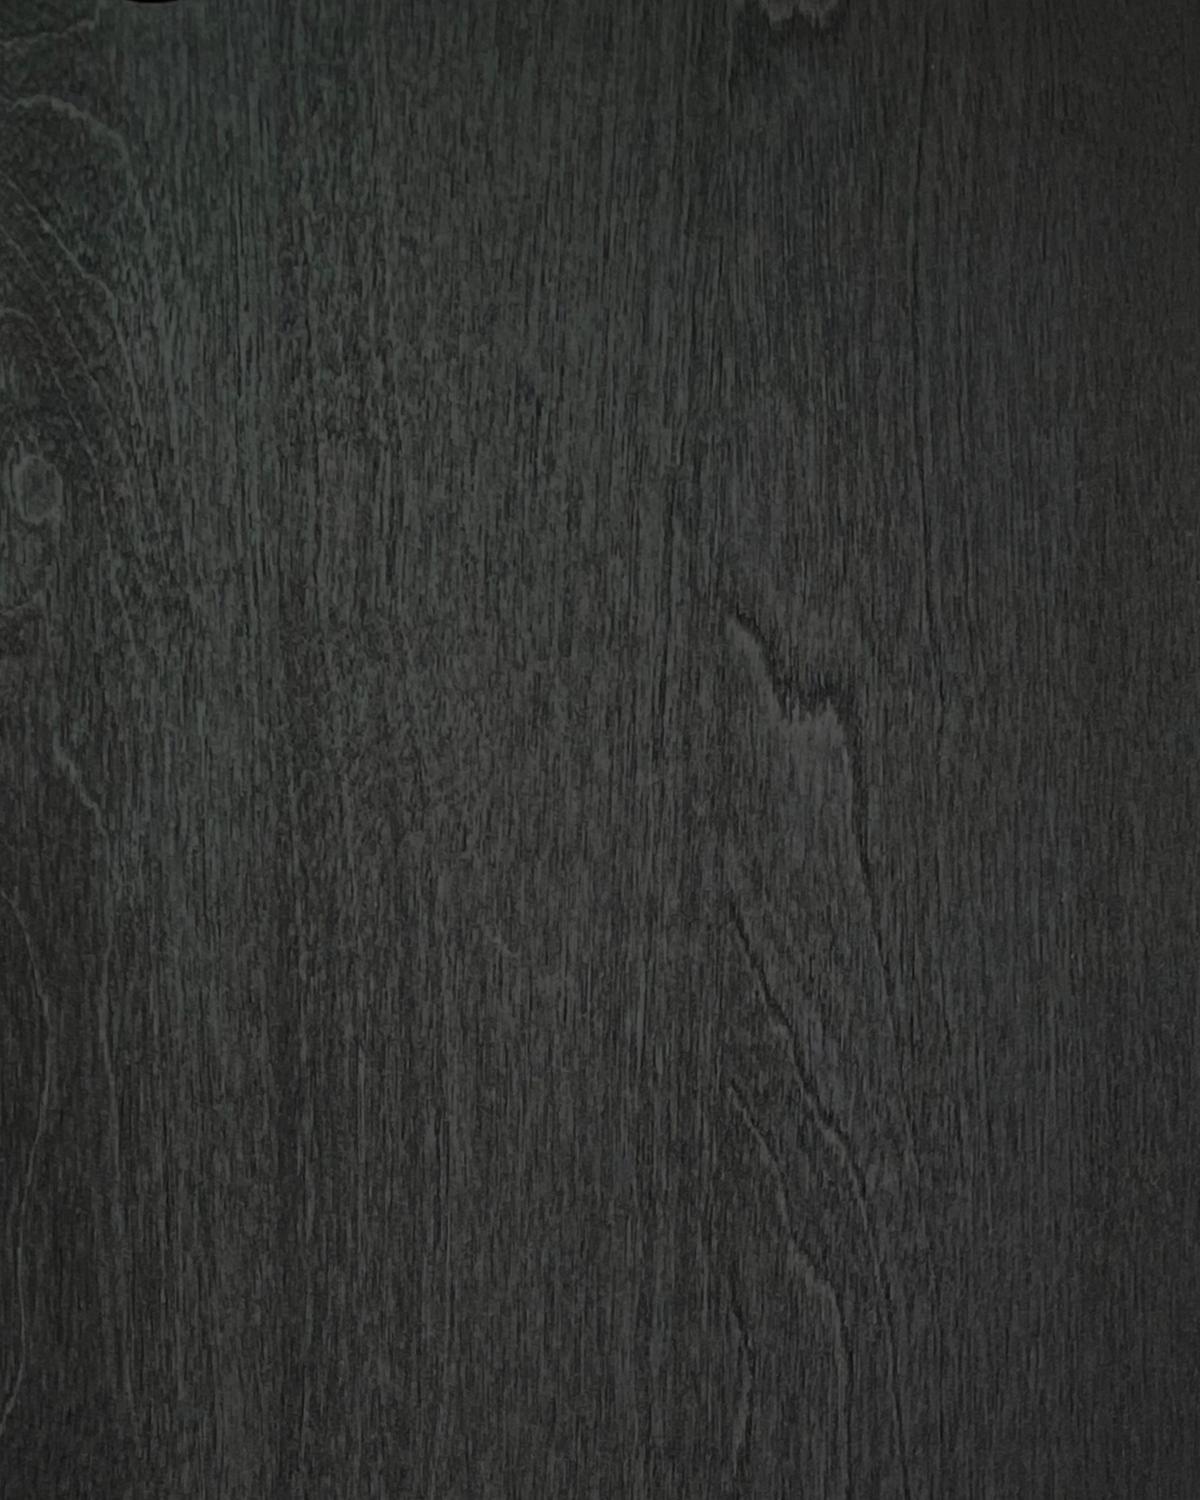 Tissage 196-Huile noire 
Buffet noir, en bouleau massif et bouleau stratifié. À la fois moderne et classique, audacieuse et modeste, cette armoire est un excellent exemple de design scandinave contemporain. Conçu par Lukas Dahlén.

Le buffet